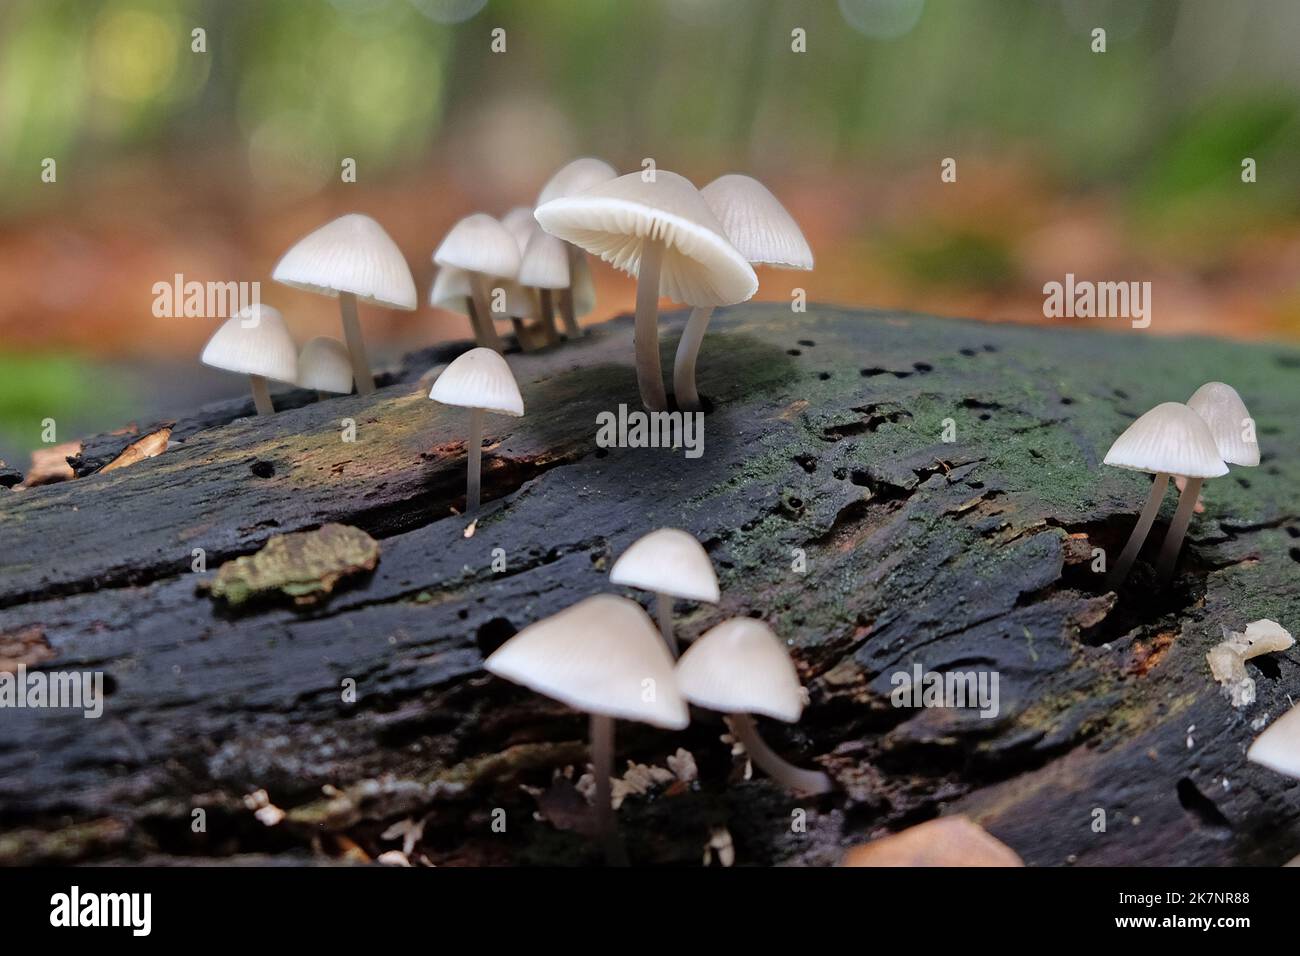 Funghi comuni del cofano in legno di faggio, Surrey, Regno Unito Foto Stock